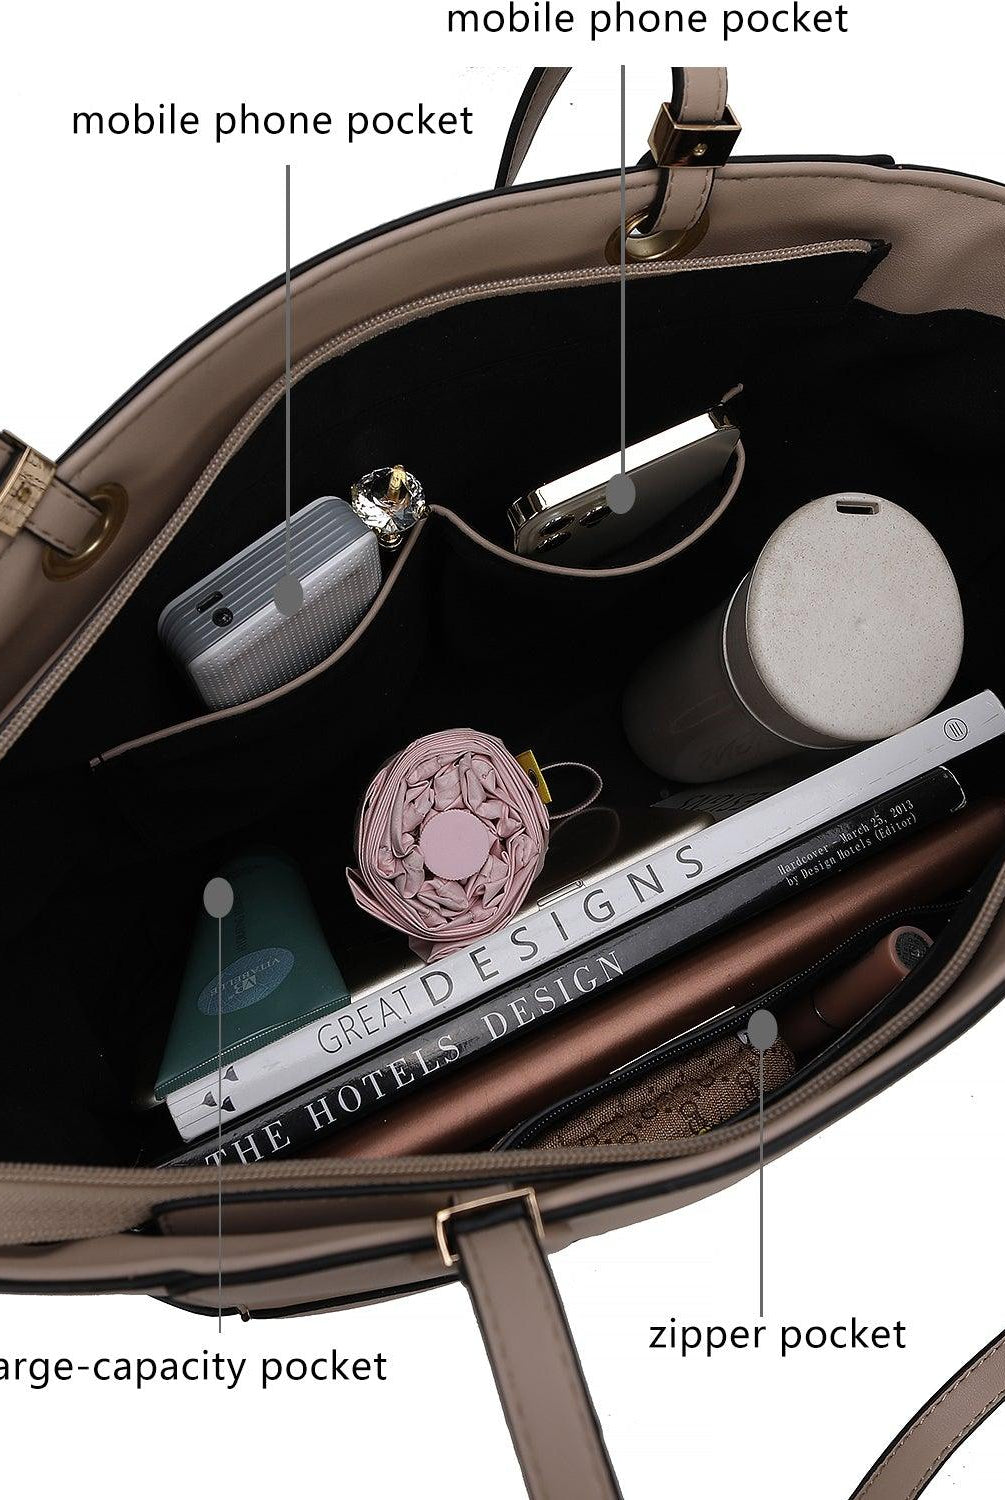 Wallets, Handbags & Accessories Prisha Vegan Leather Women’S Tote Handbag With Wallet